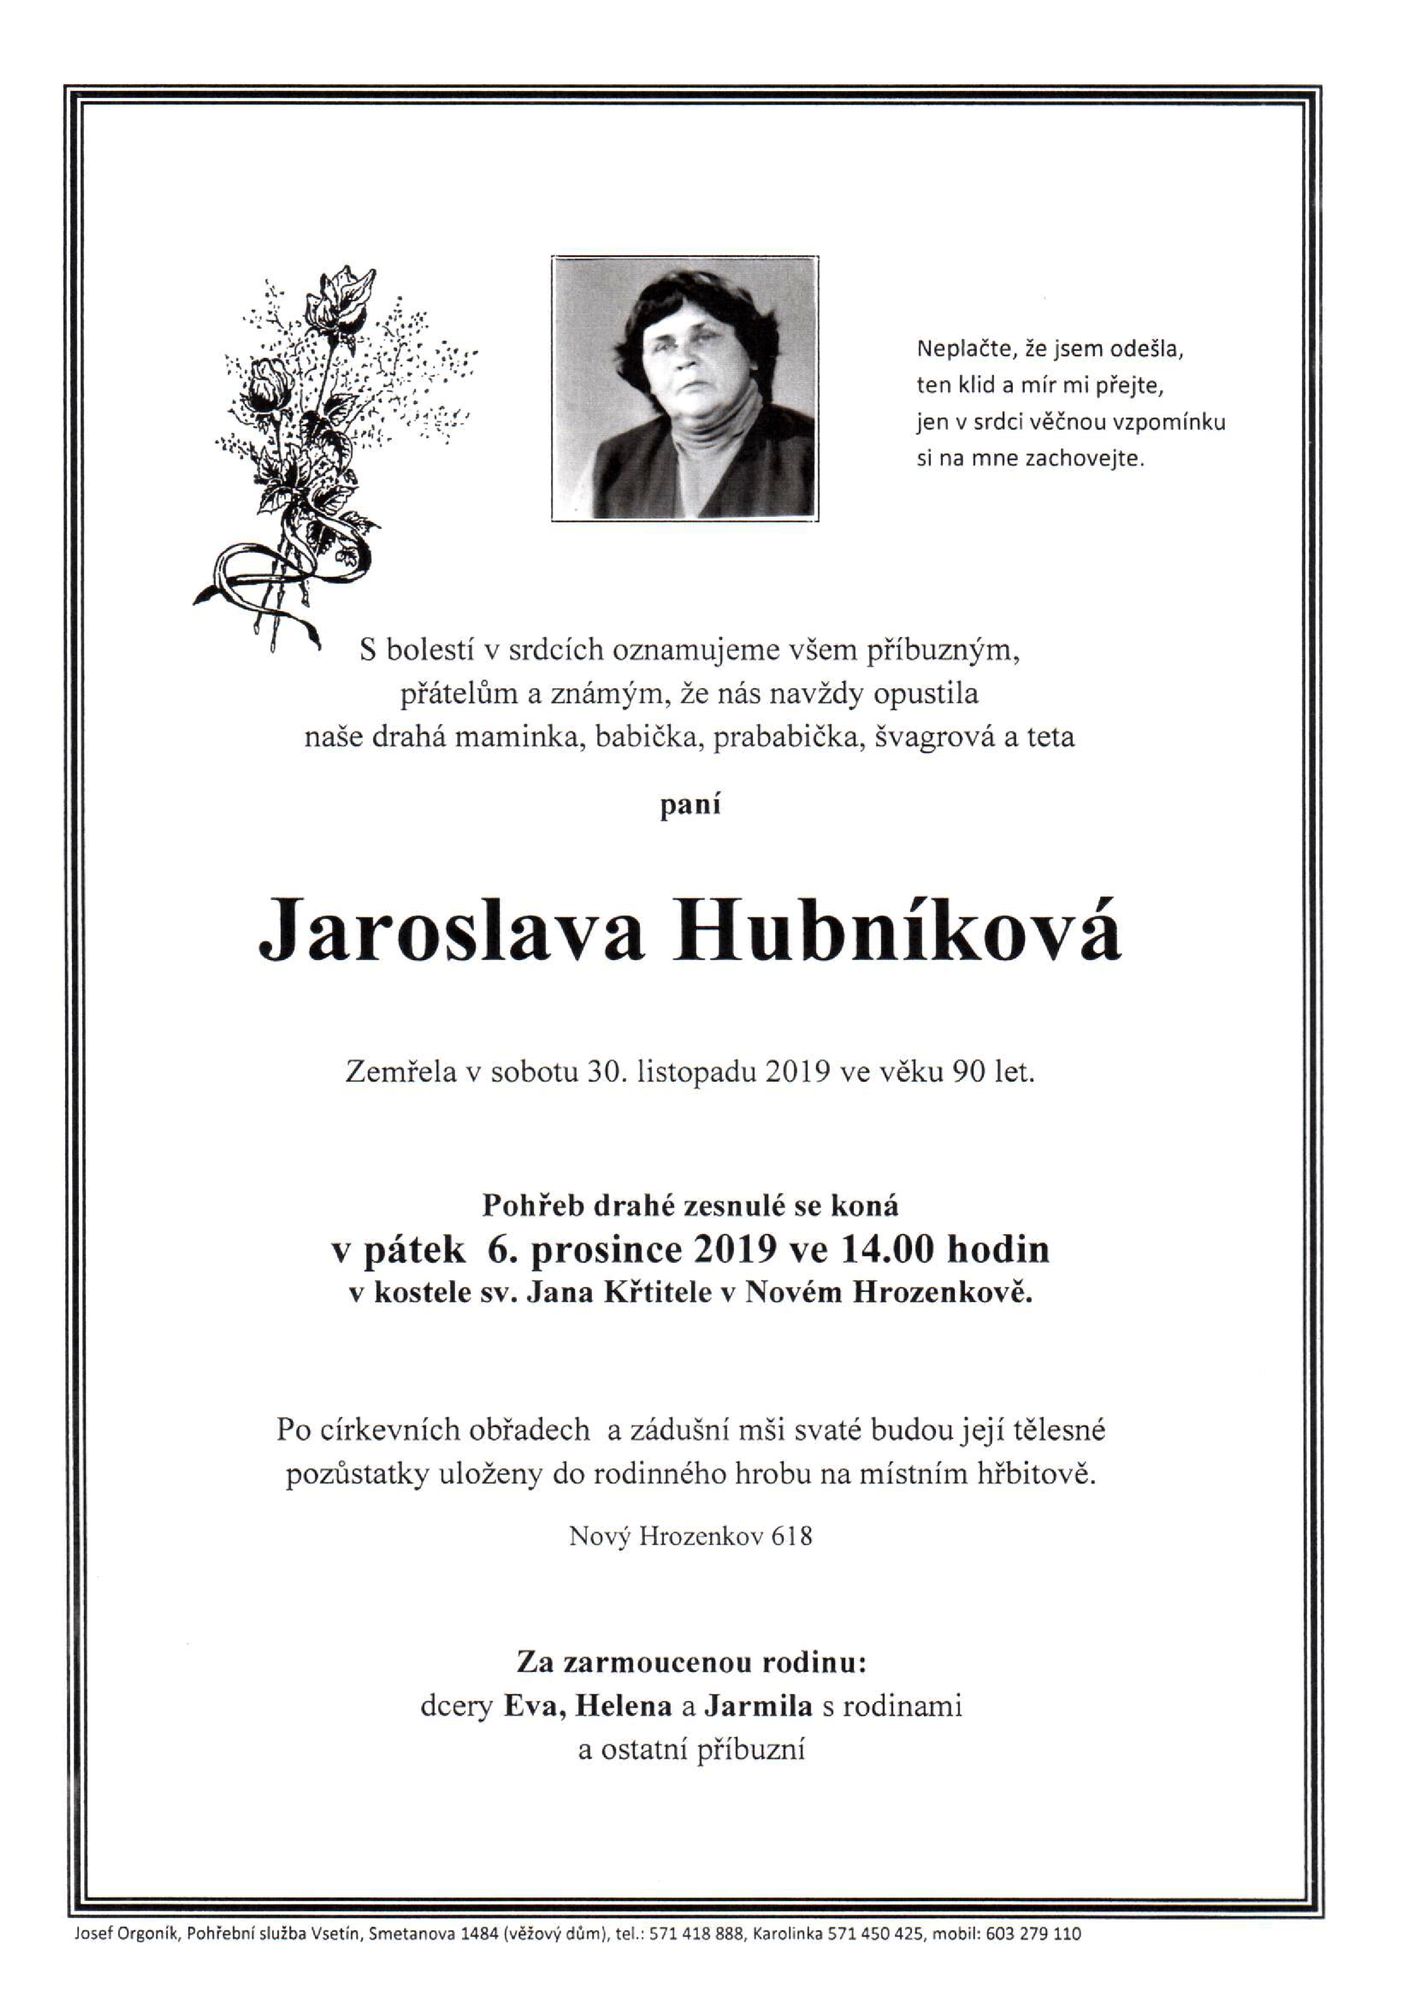 Jaroslava Hubníková